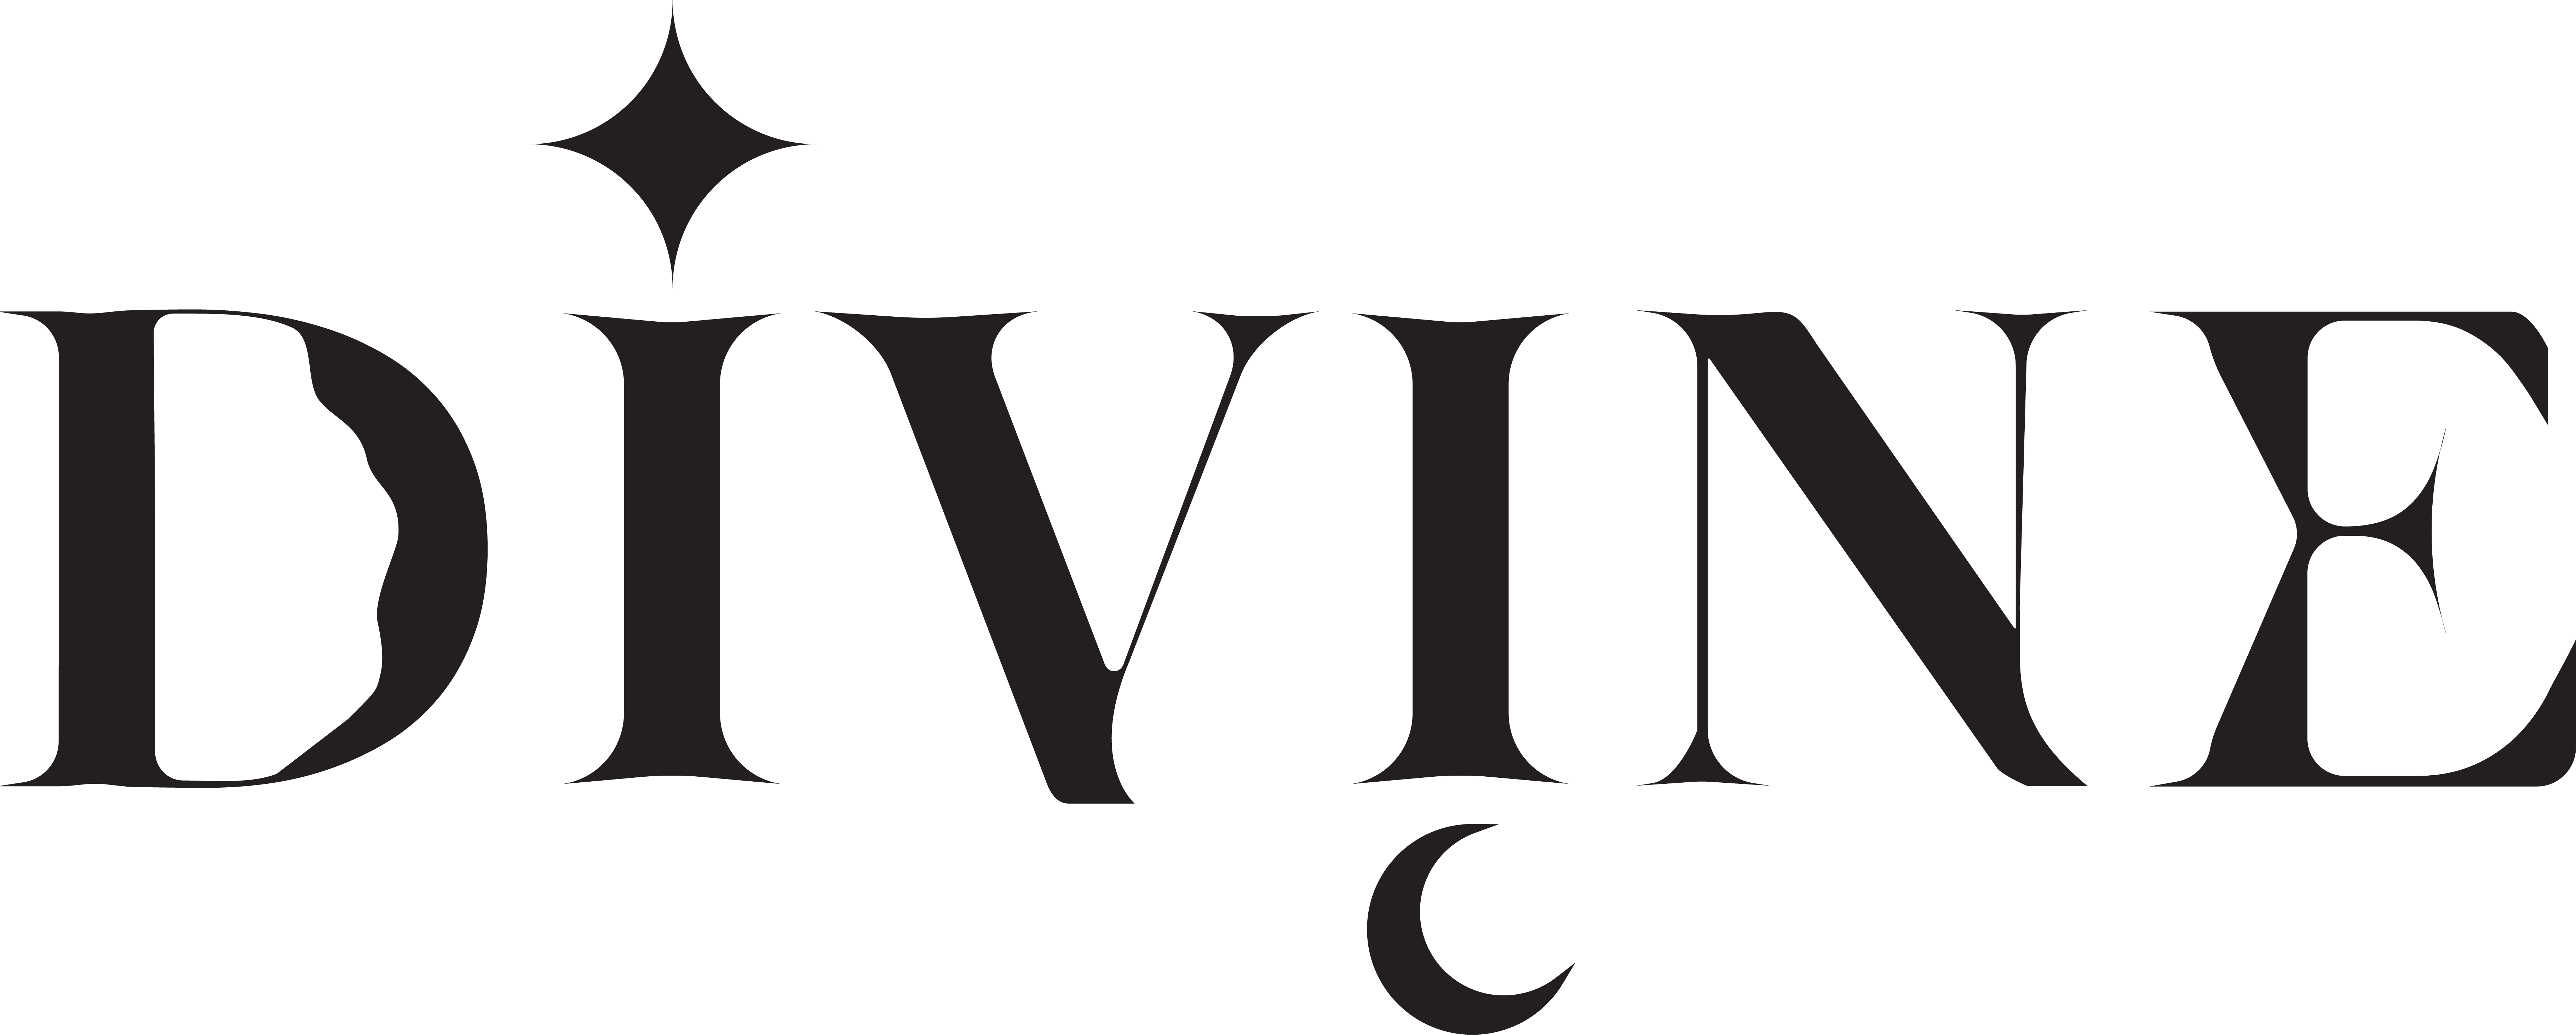 Divine Decor logo | Create logo design, Company logo design, Decor logo